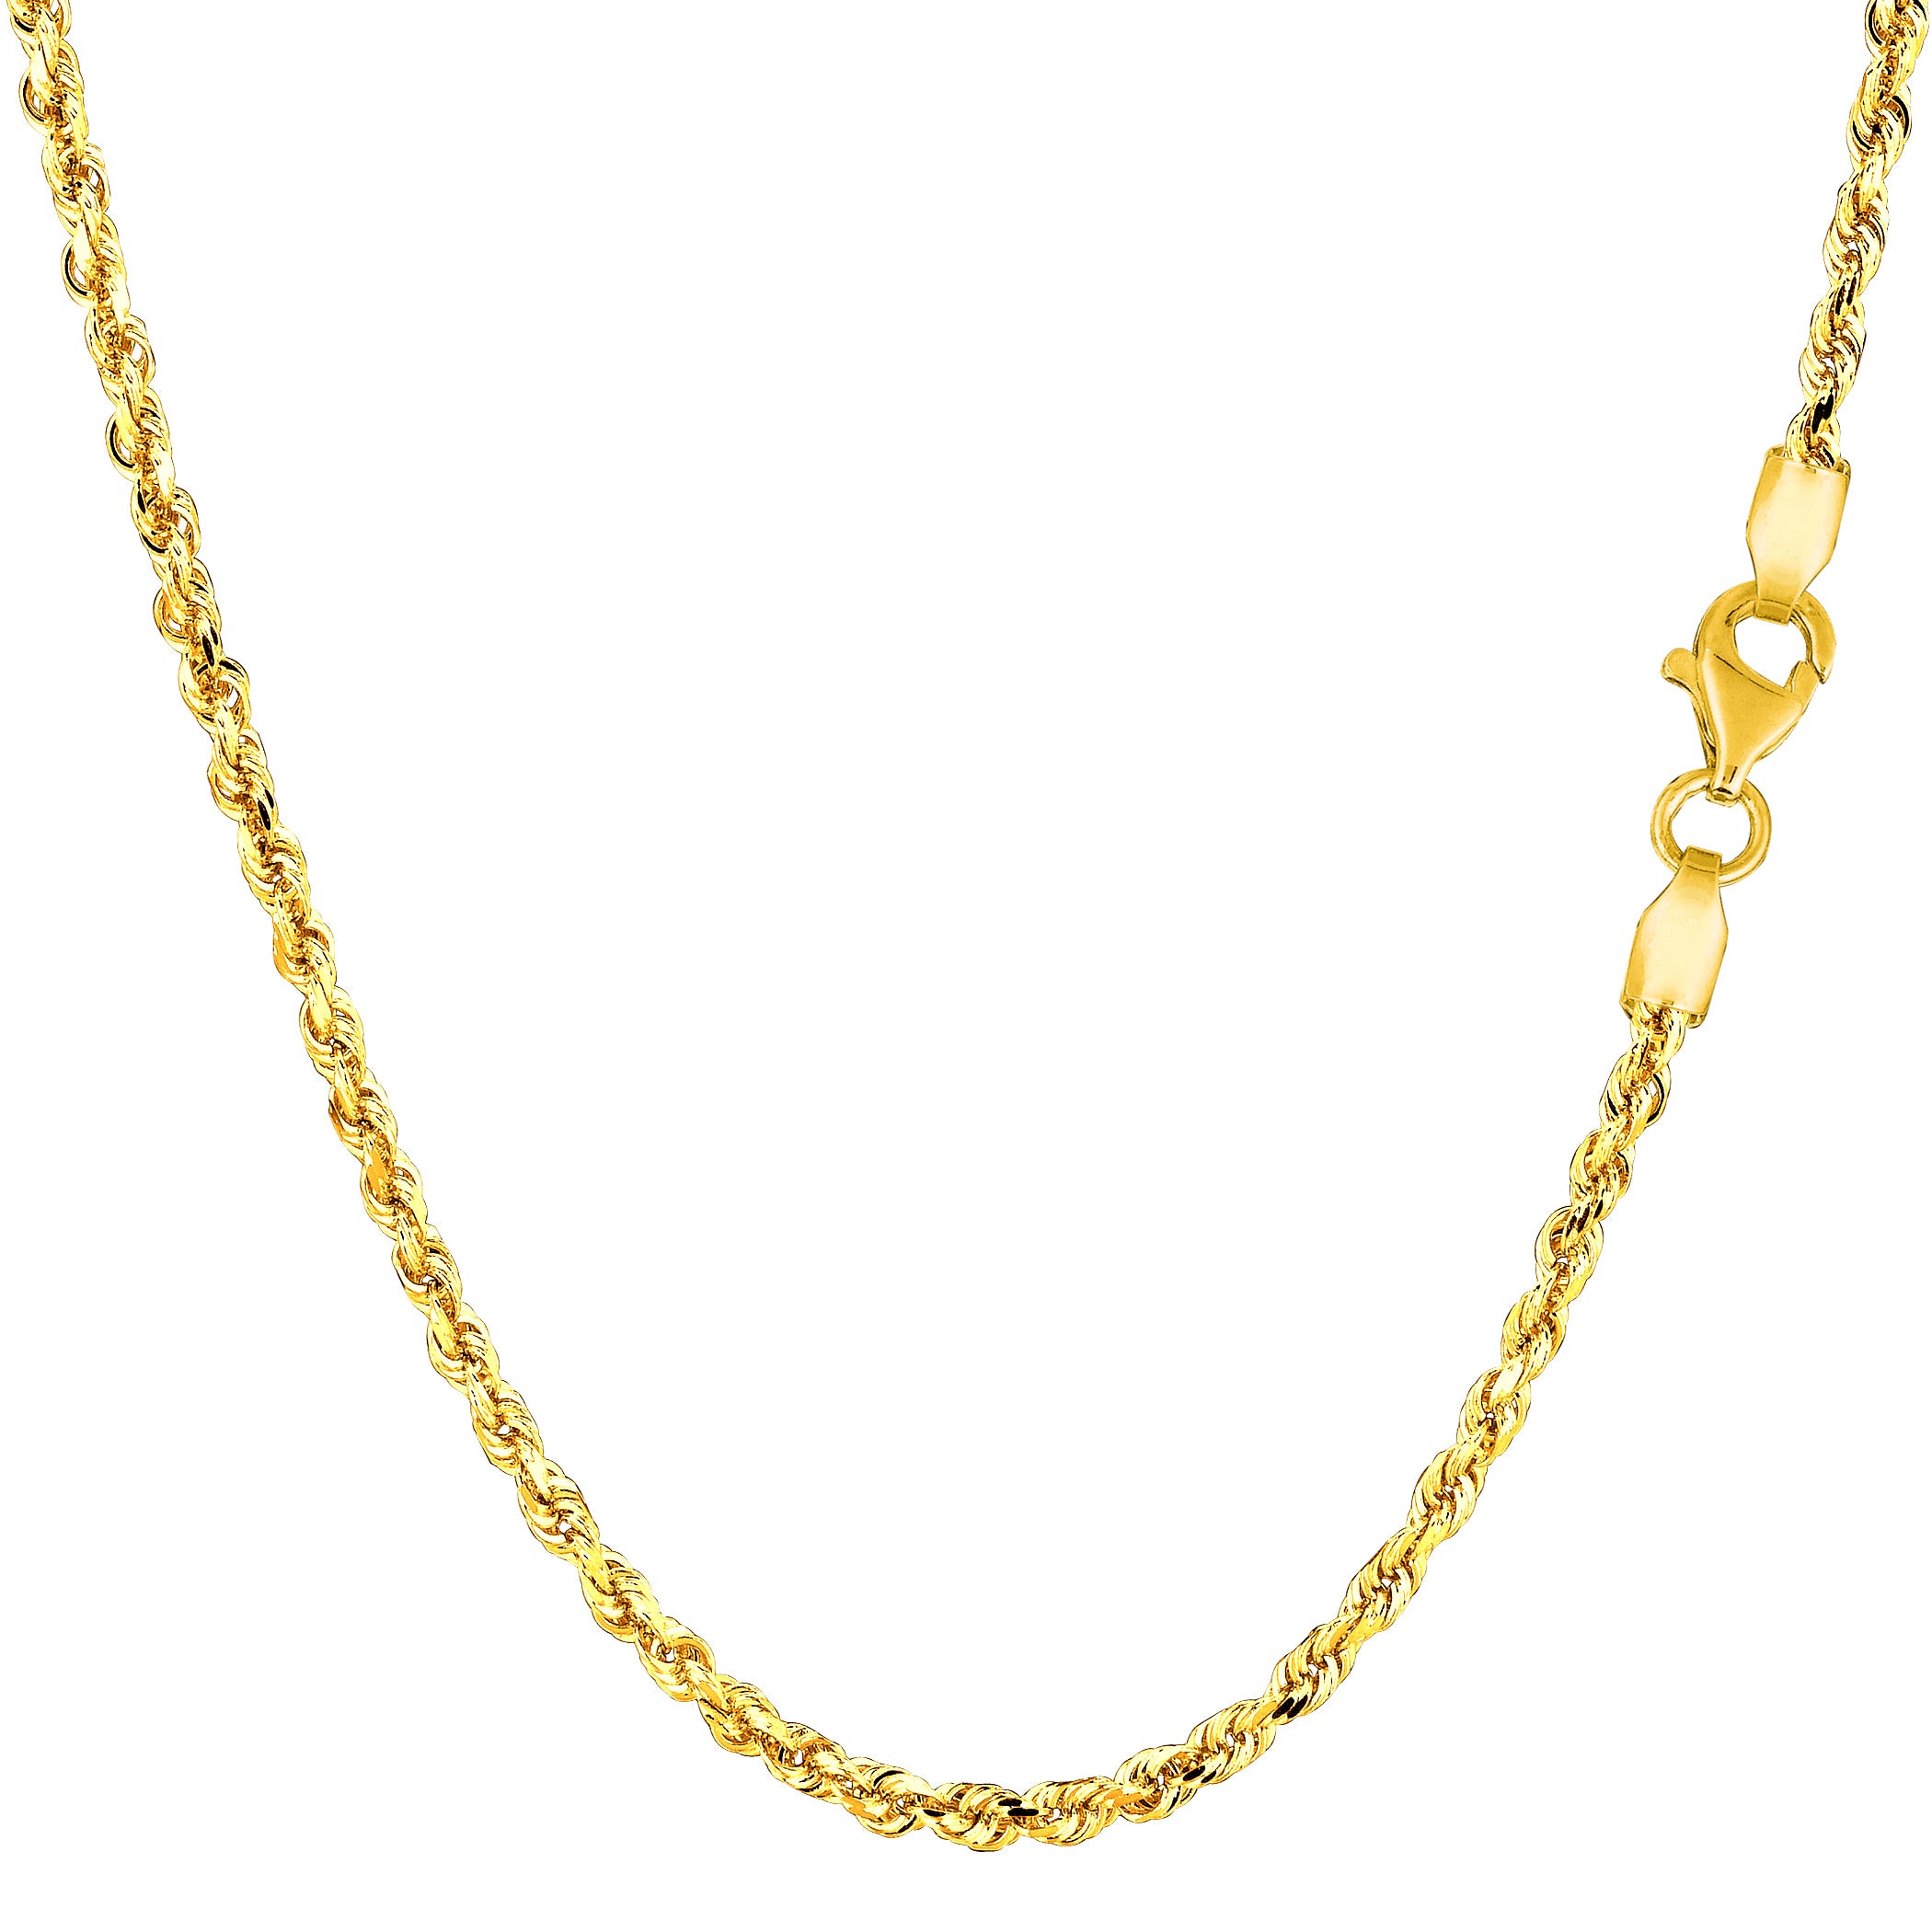 Pulsera de cadena de cuerda sólida rellena de oro amarillo de 14 quilates, joyería fina de diseño de 2,1 mm y 8,5 pulgadas para hombres y mujeres